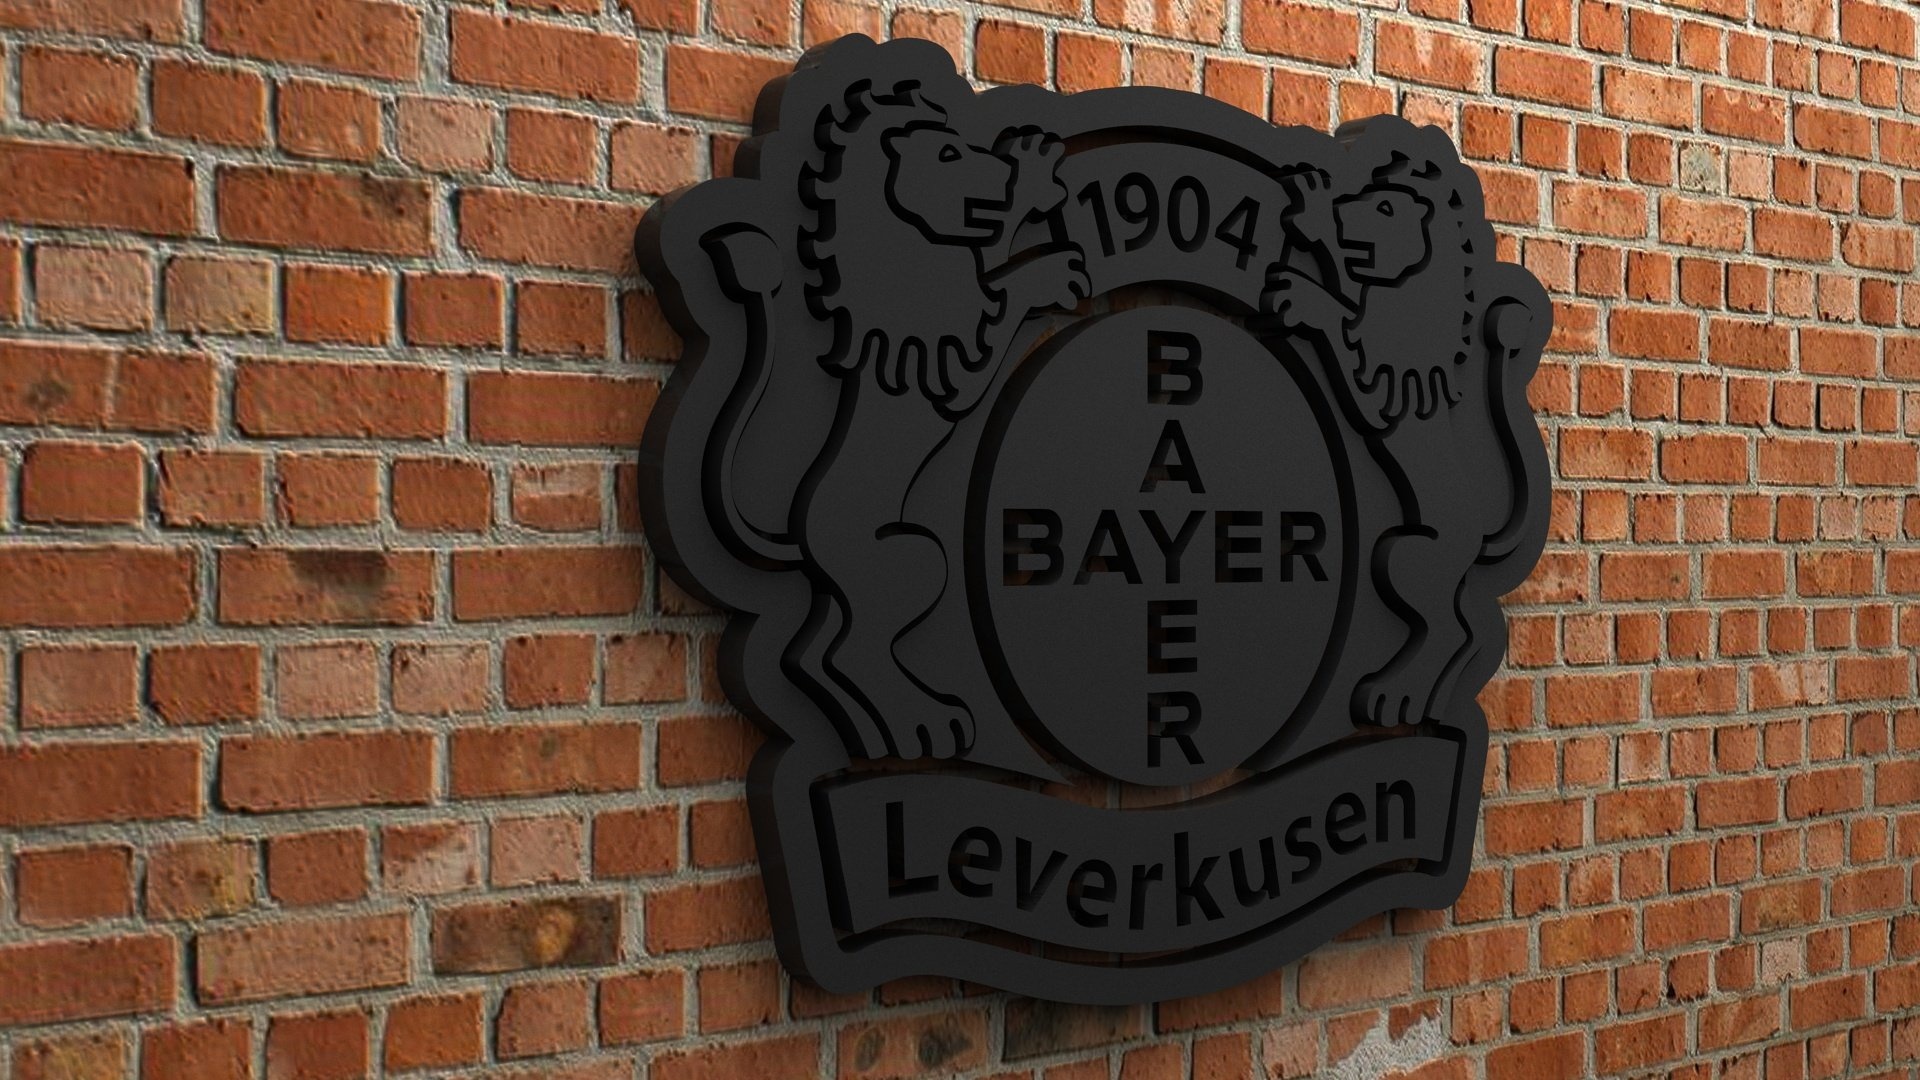 HD wallpaper, Desktop 1080P Bayer 04 Leverkusen Wallpaper, Logo Design, 1920X1080 Full Hd Desktop, High Quality Model, Bayer 04 Leverkusen, 3D Printable